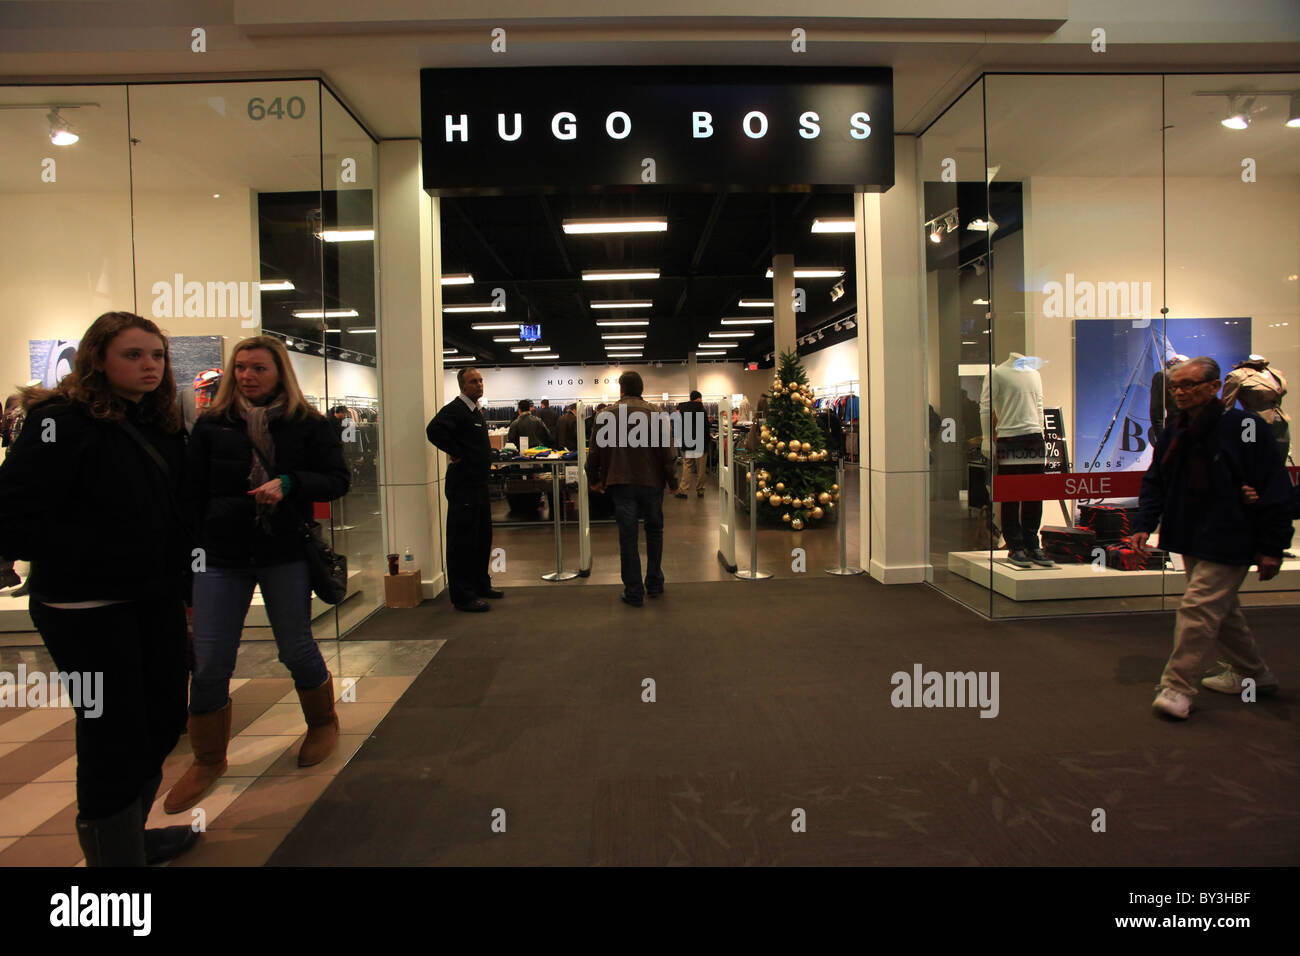 Hugo boss outlet immagini e fotografie stock ad alta risoluzione - Alamy